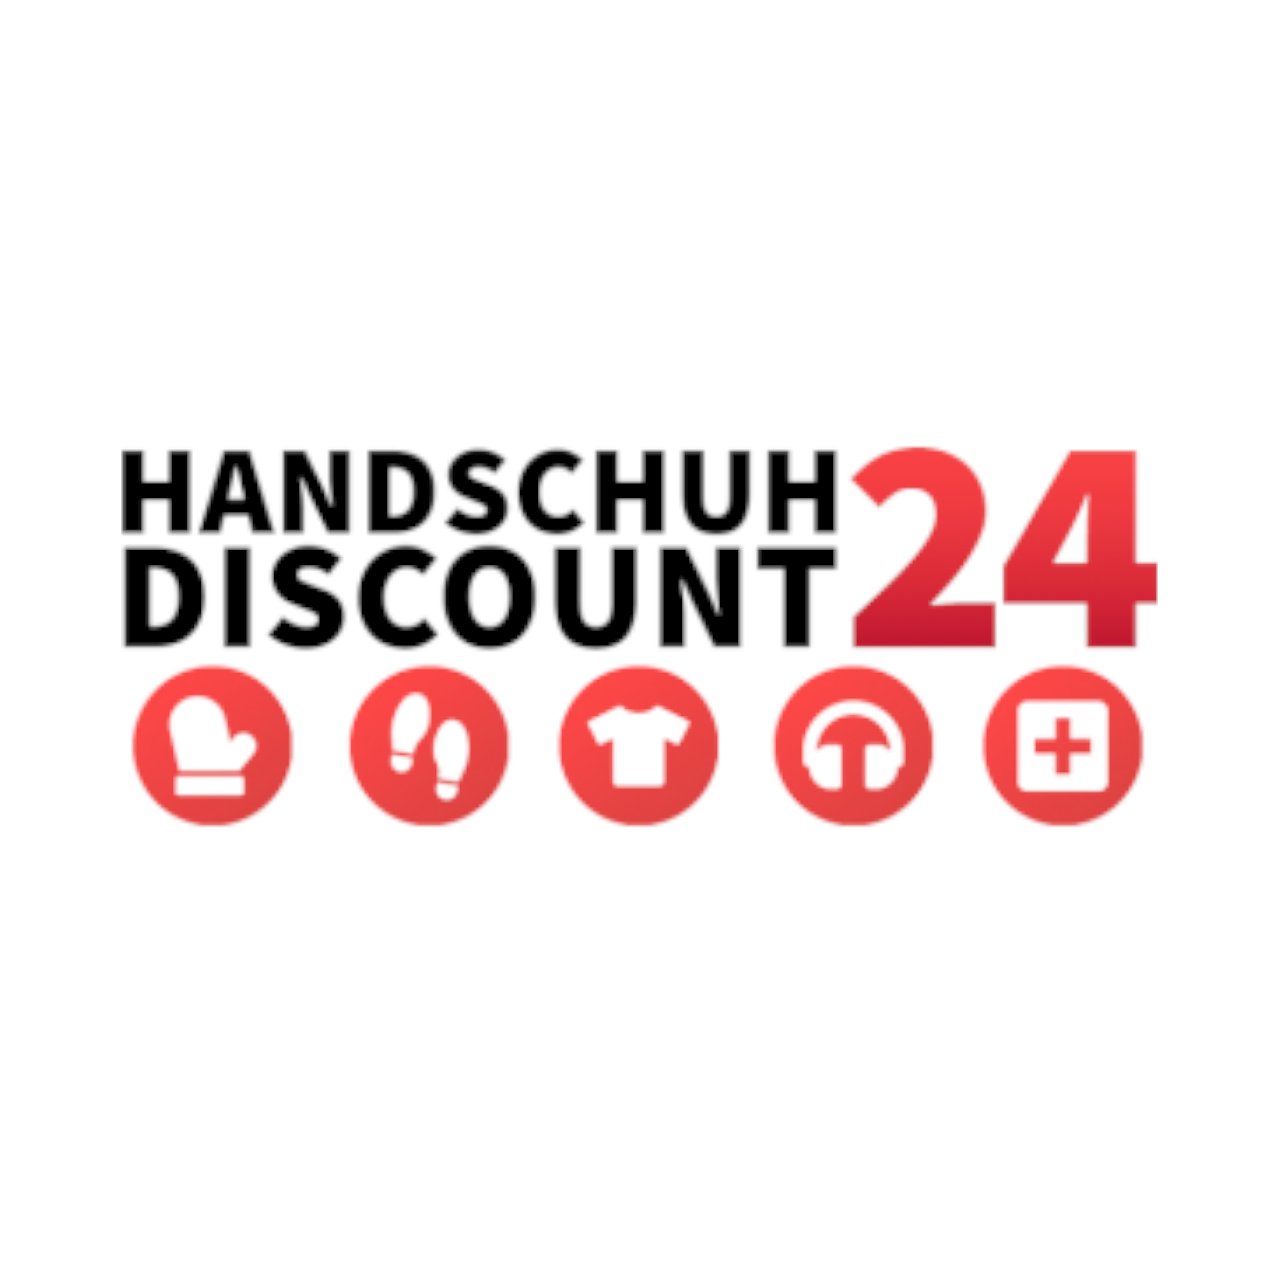 (c) Handschuhdiscount24.de